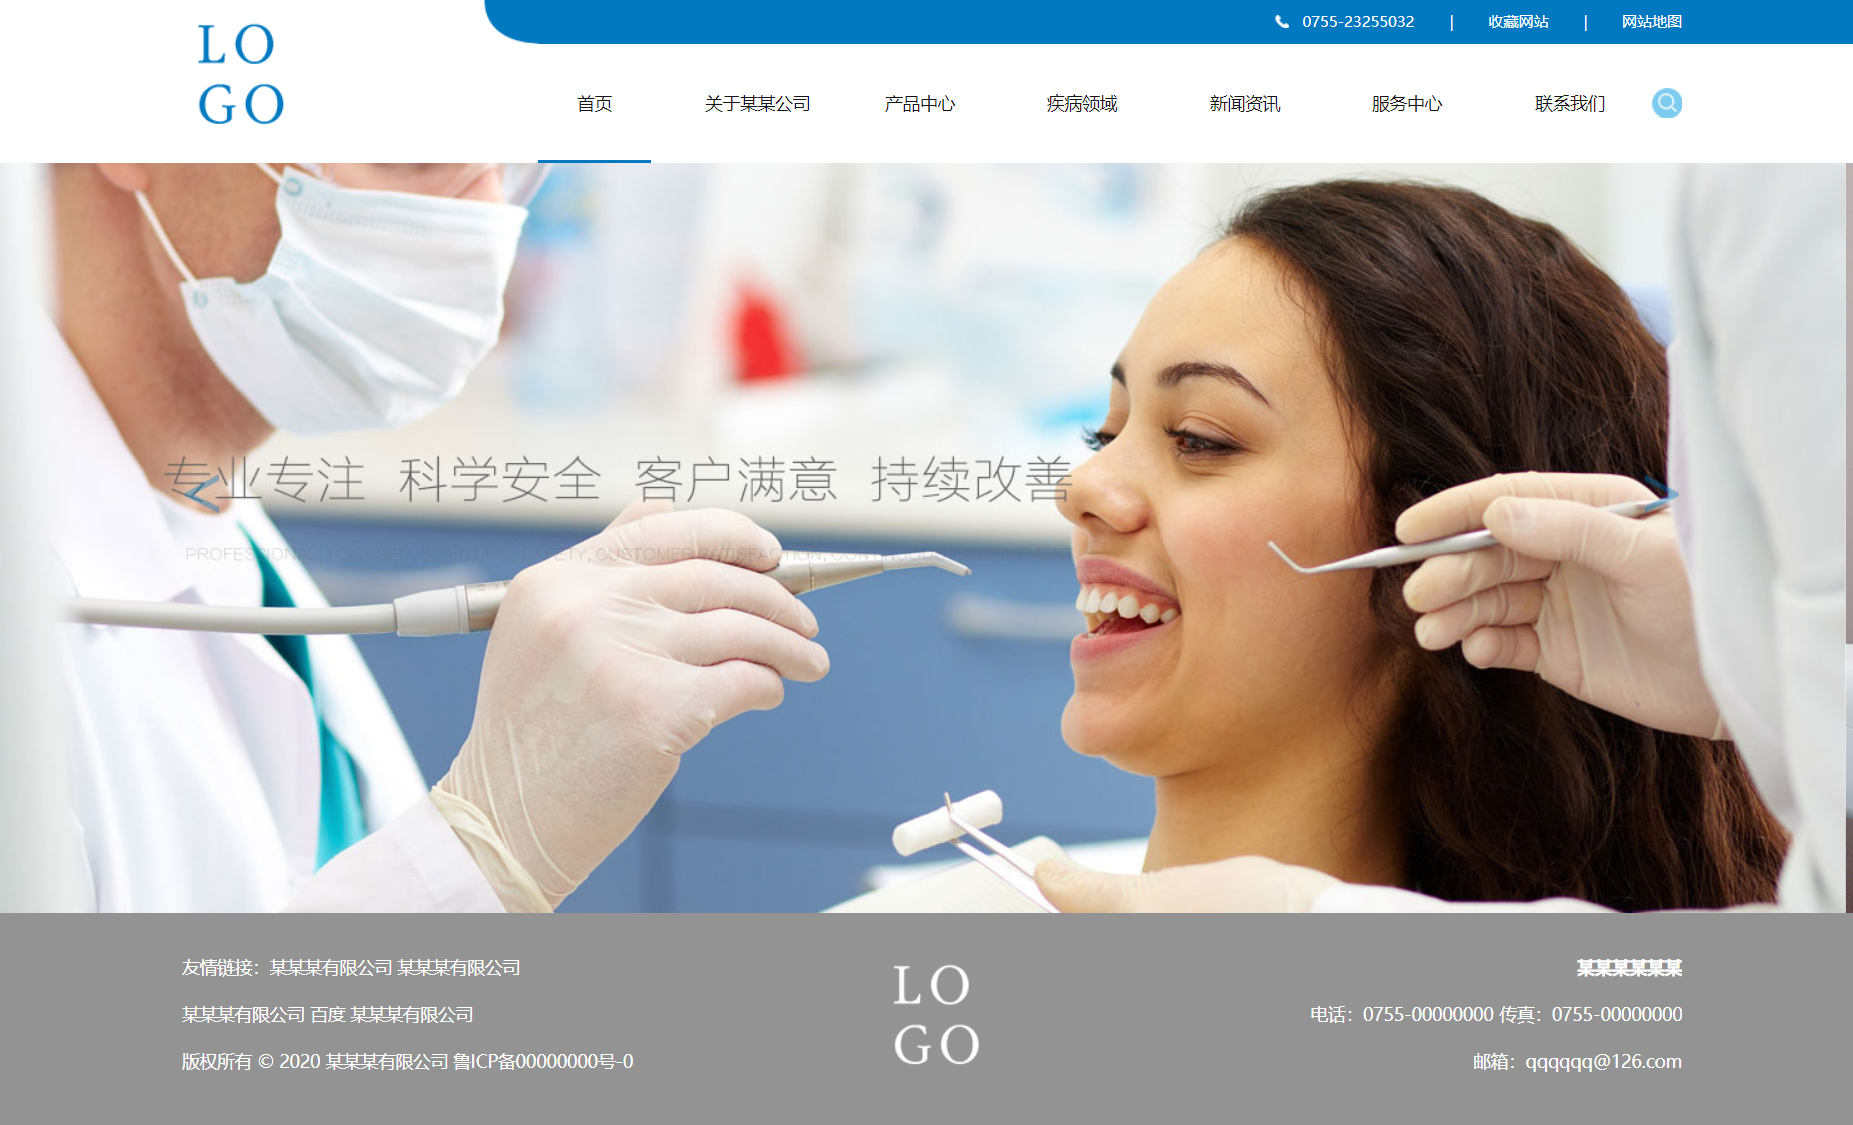 蓝色简洁风格响应式医疗器械企业网站模板